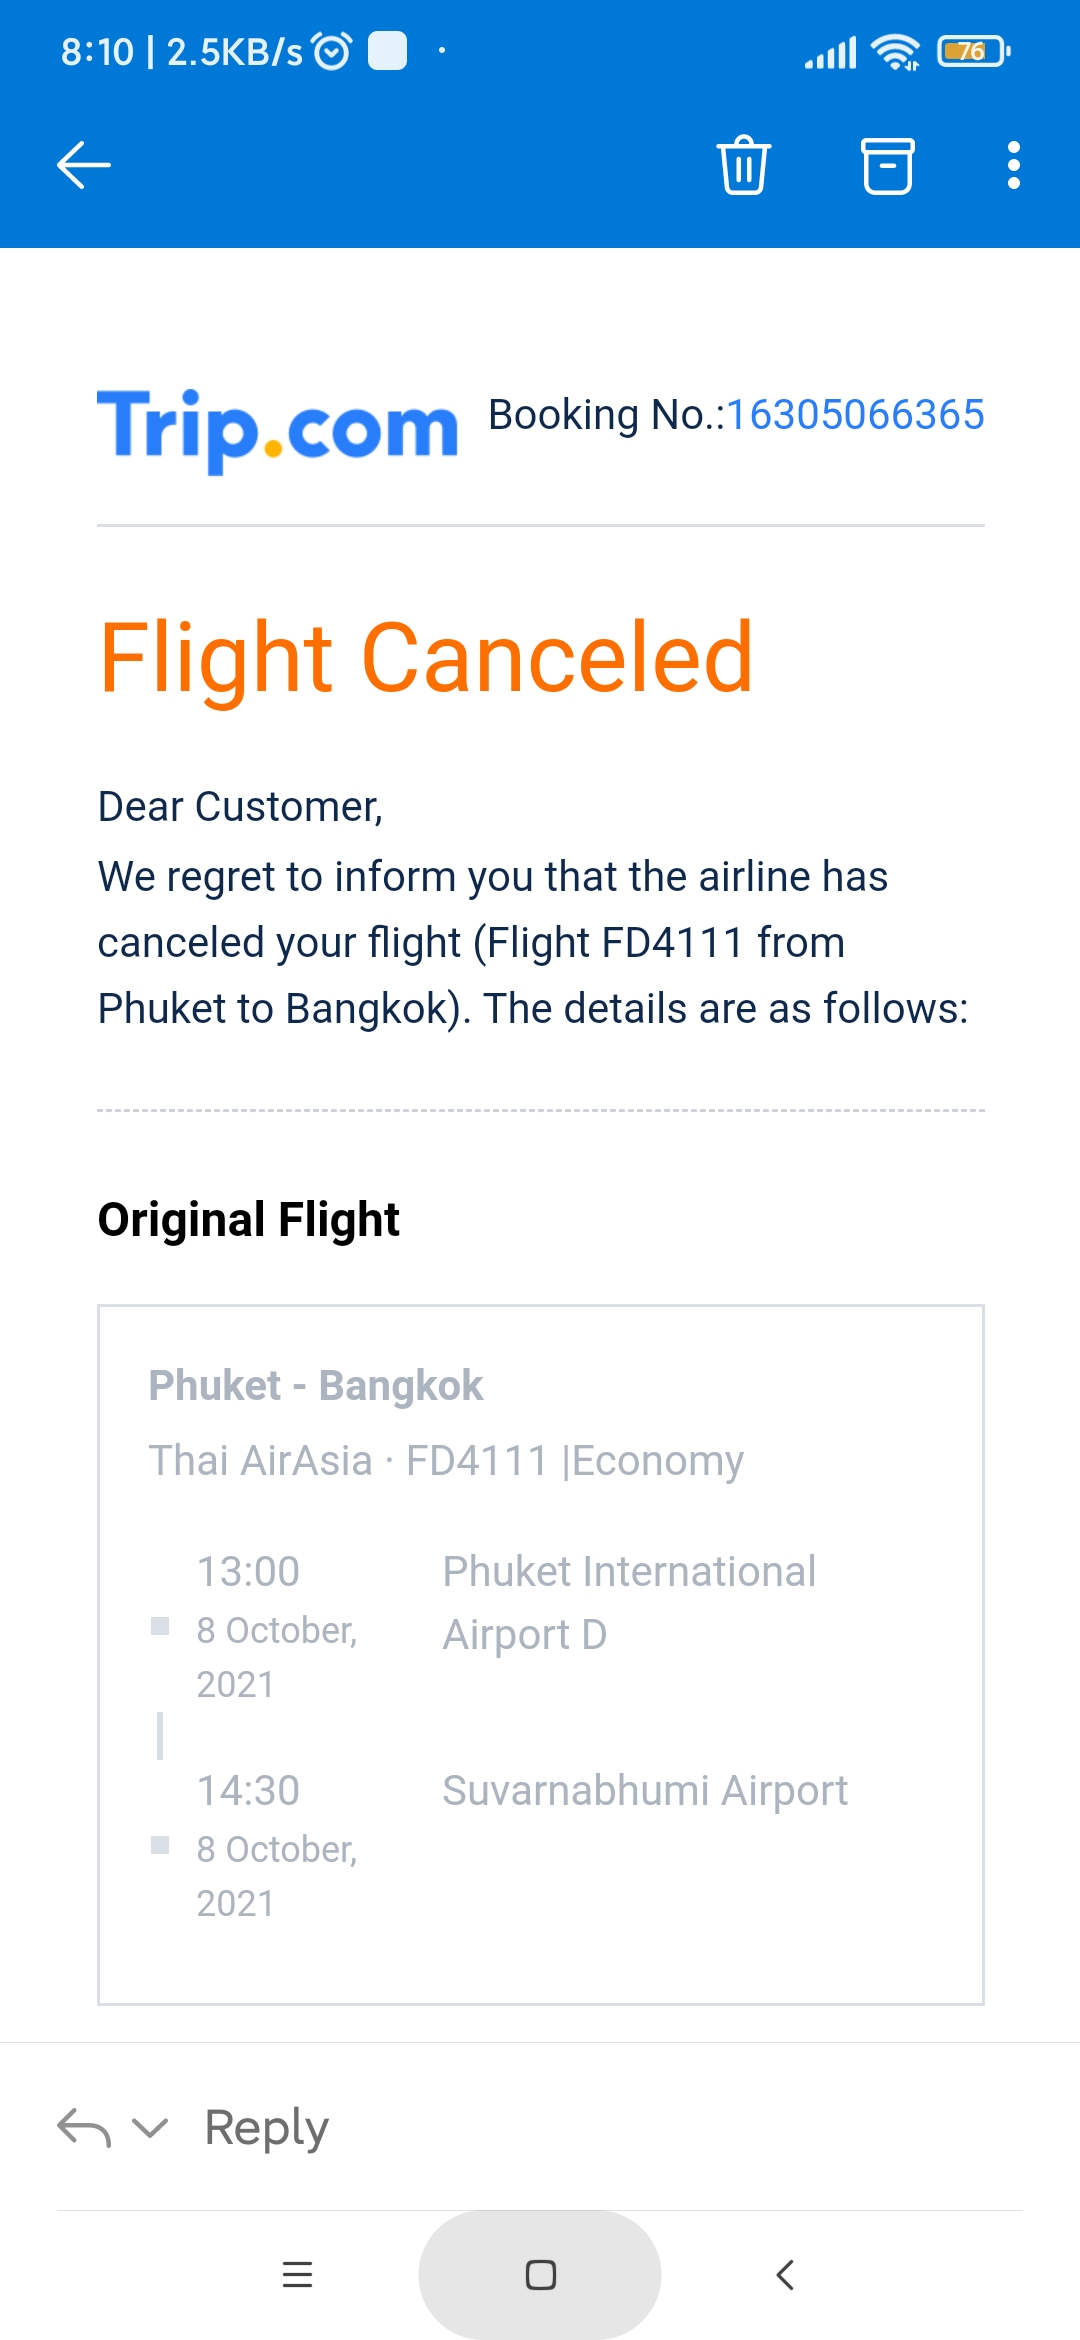 Airasia customer service